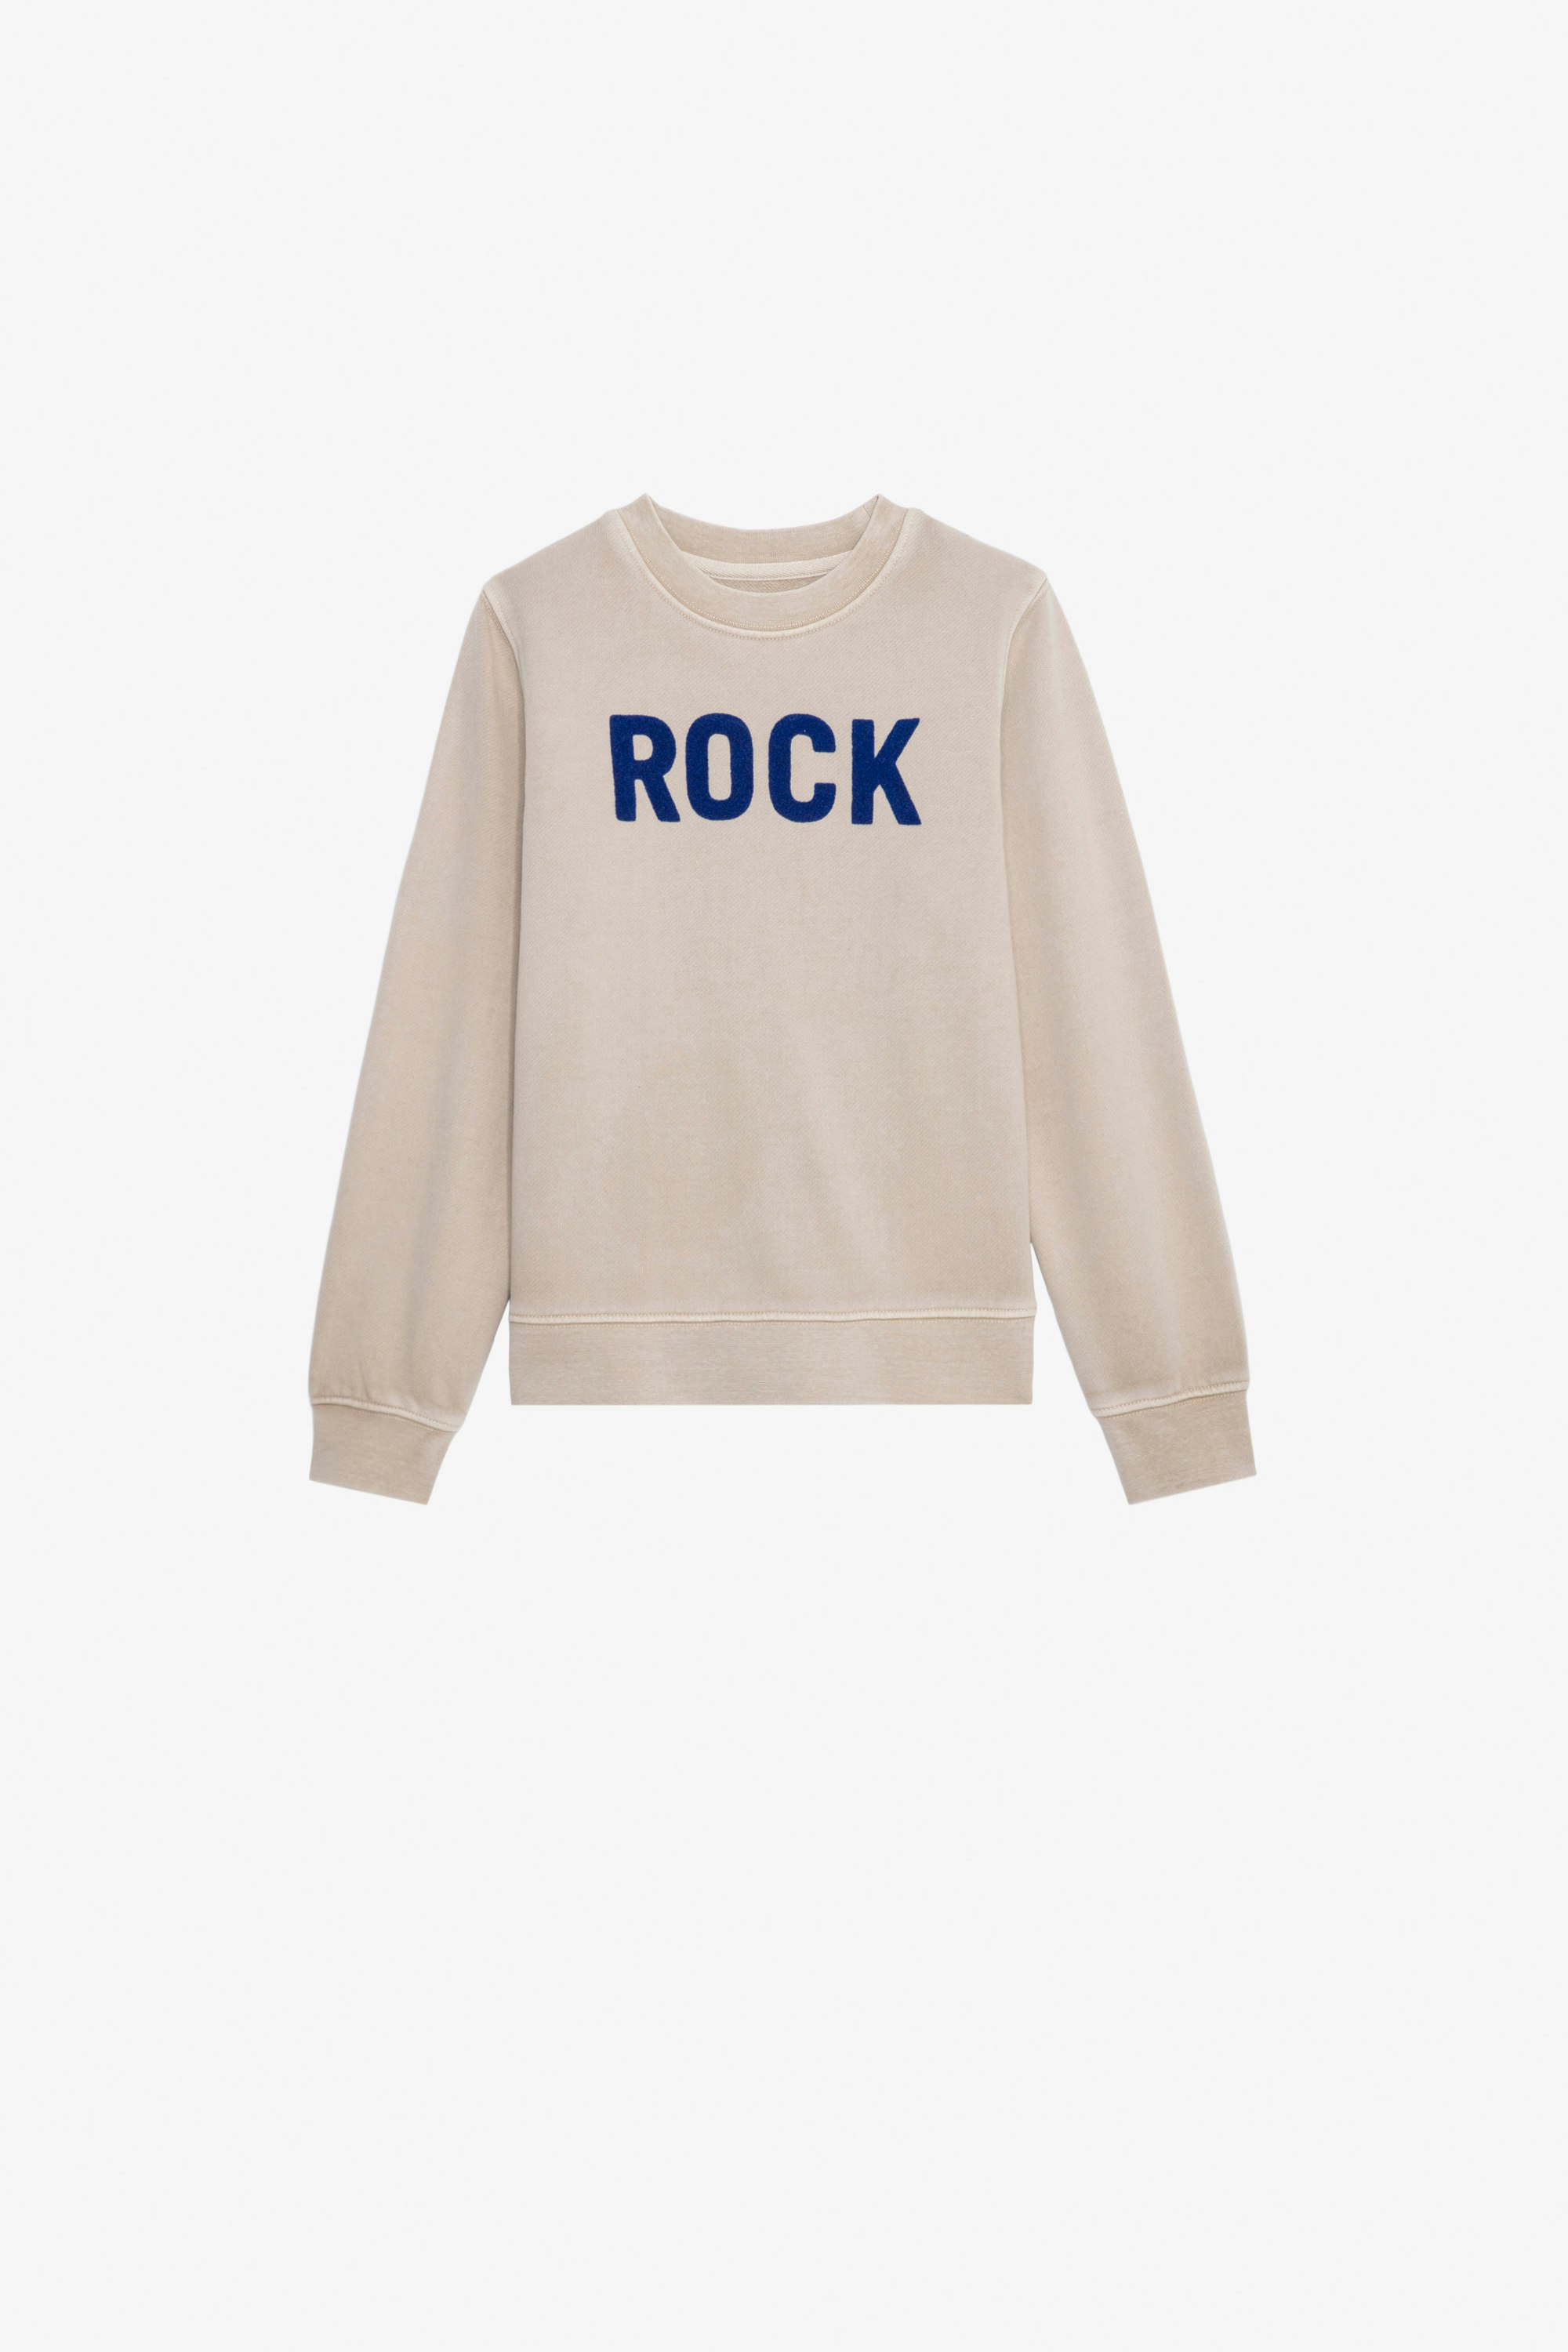 Simba Boys’ Sweatshirt Boys’ beige cotton fleece sweatshirt with “Rock” slogan.